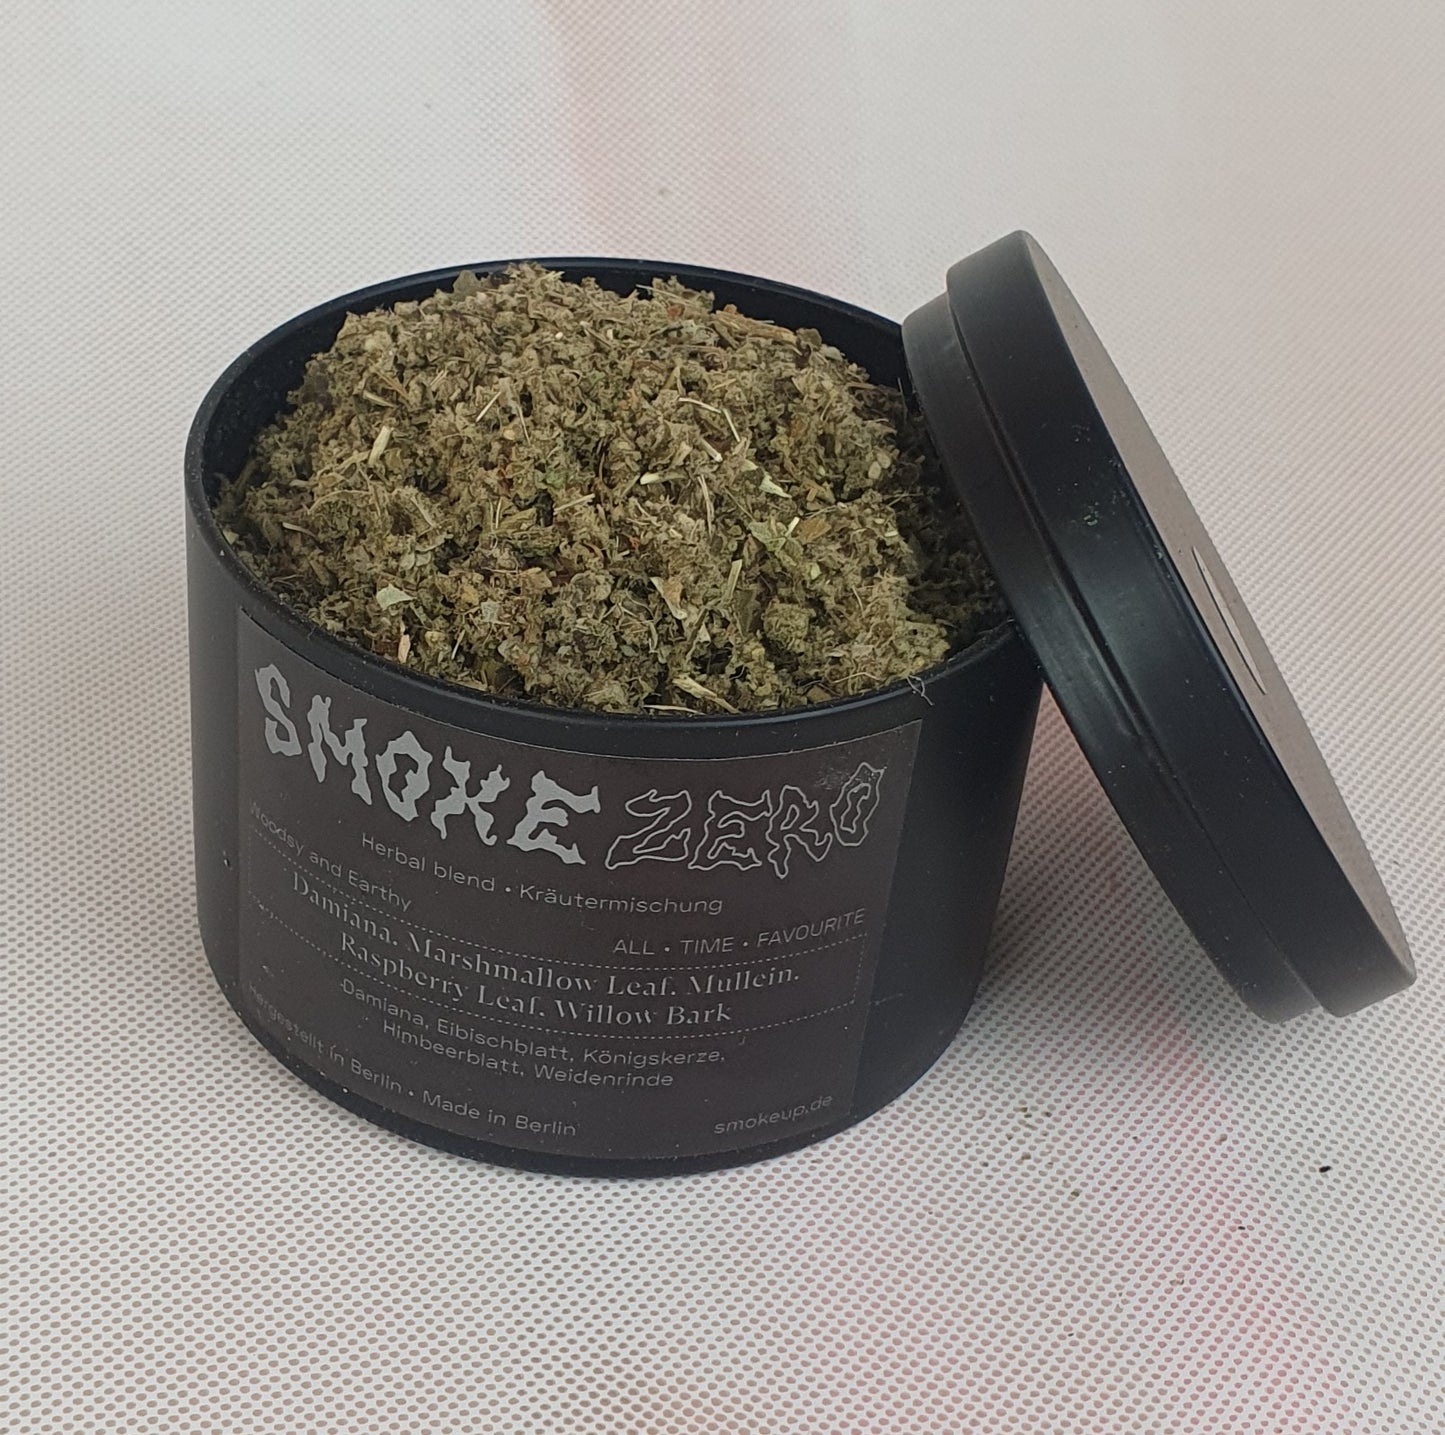 SMOKE ZERO Herbal Blend